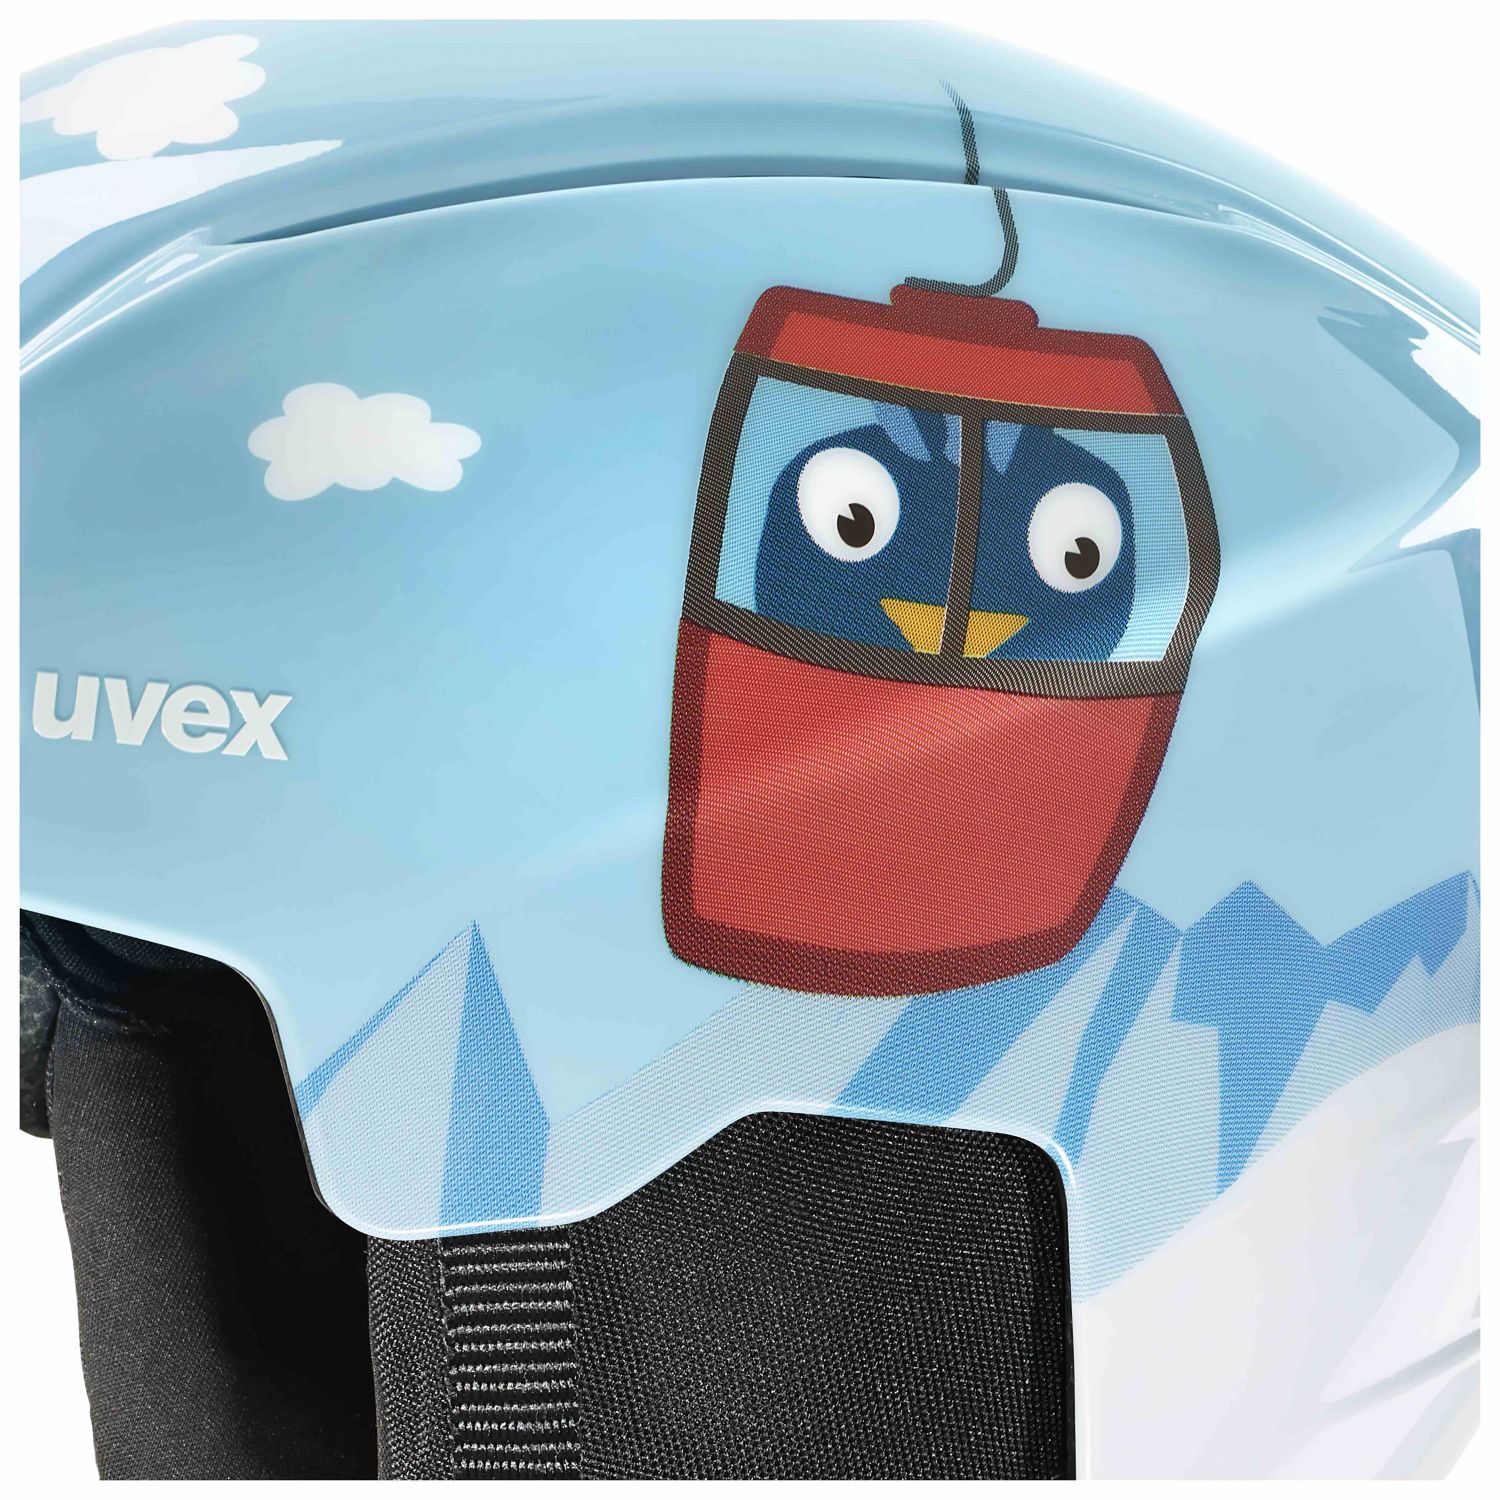 Uvex Viti Set, casque de ski + masque de ski, junior, bleu clair